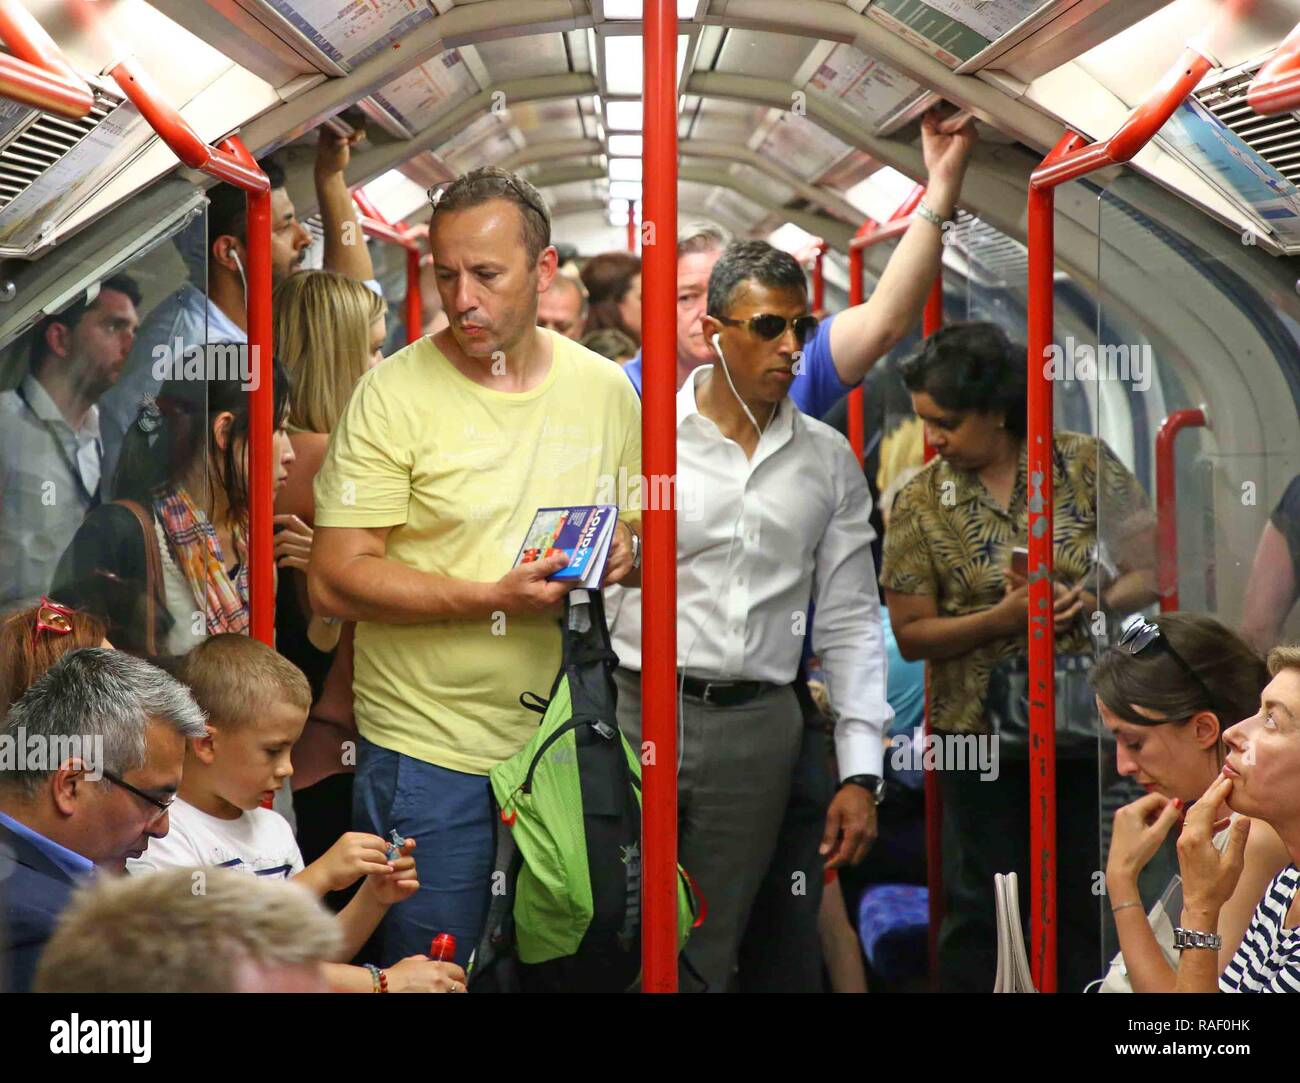 Heraus und über die Passagiere erleben heißen Temperaturen in der Londoner U-Bahn, Central Line. Bild von: NIGEL HOWARD © e-Mail: nigelhowardmedia@gm Stockfoto